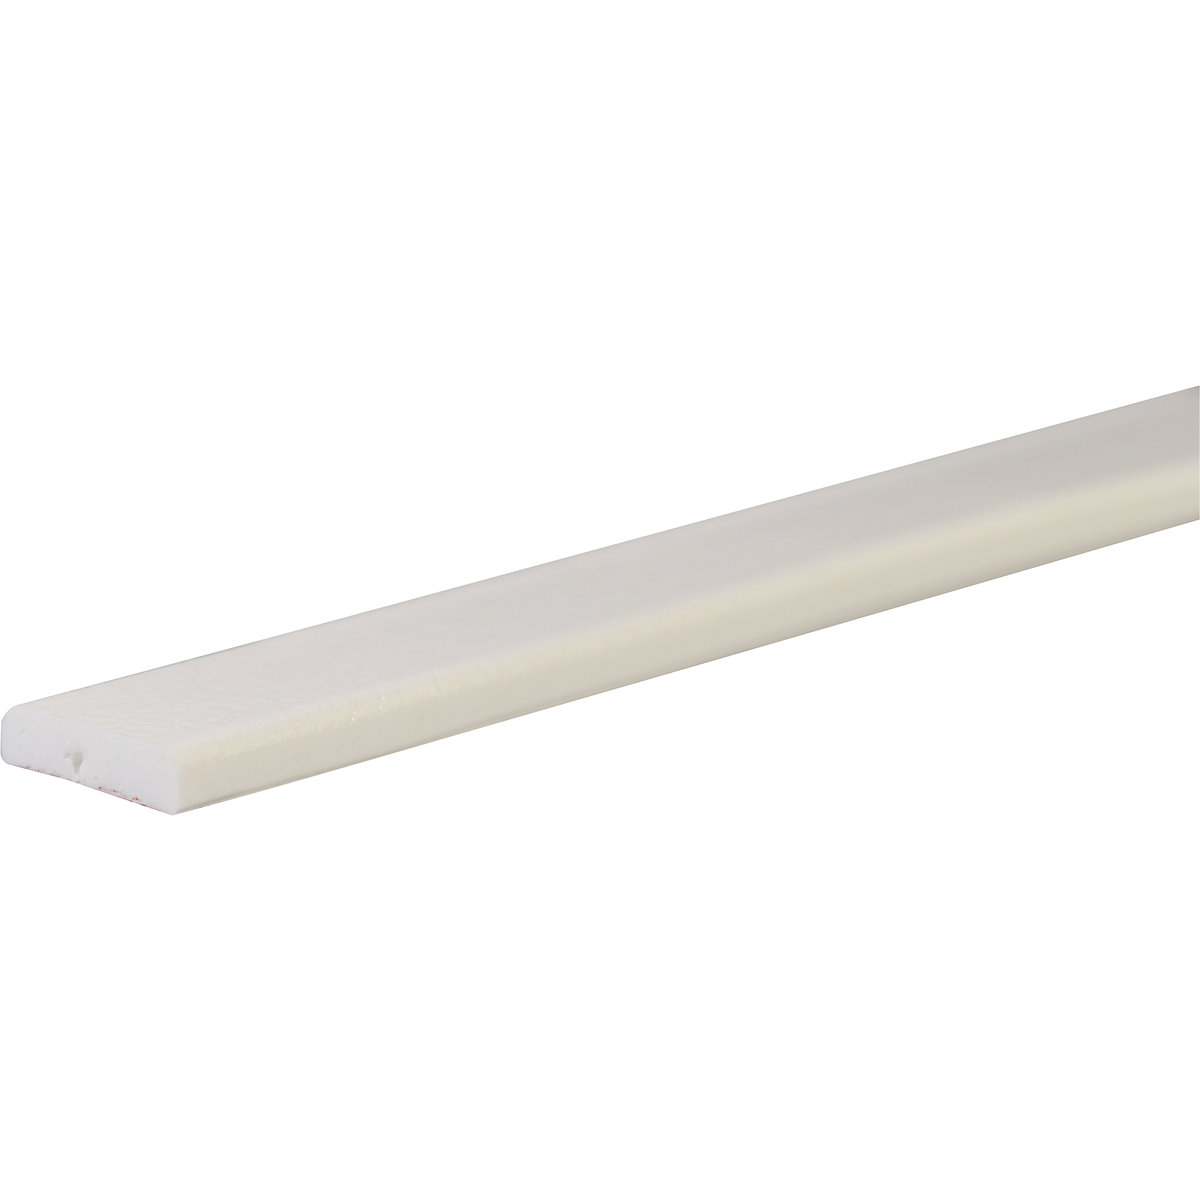 Protection des surfaces Knuffi® – SHG, type F, 1 rouleau de 50 m, blanc